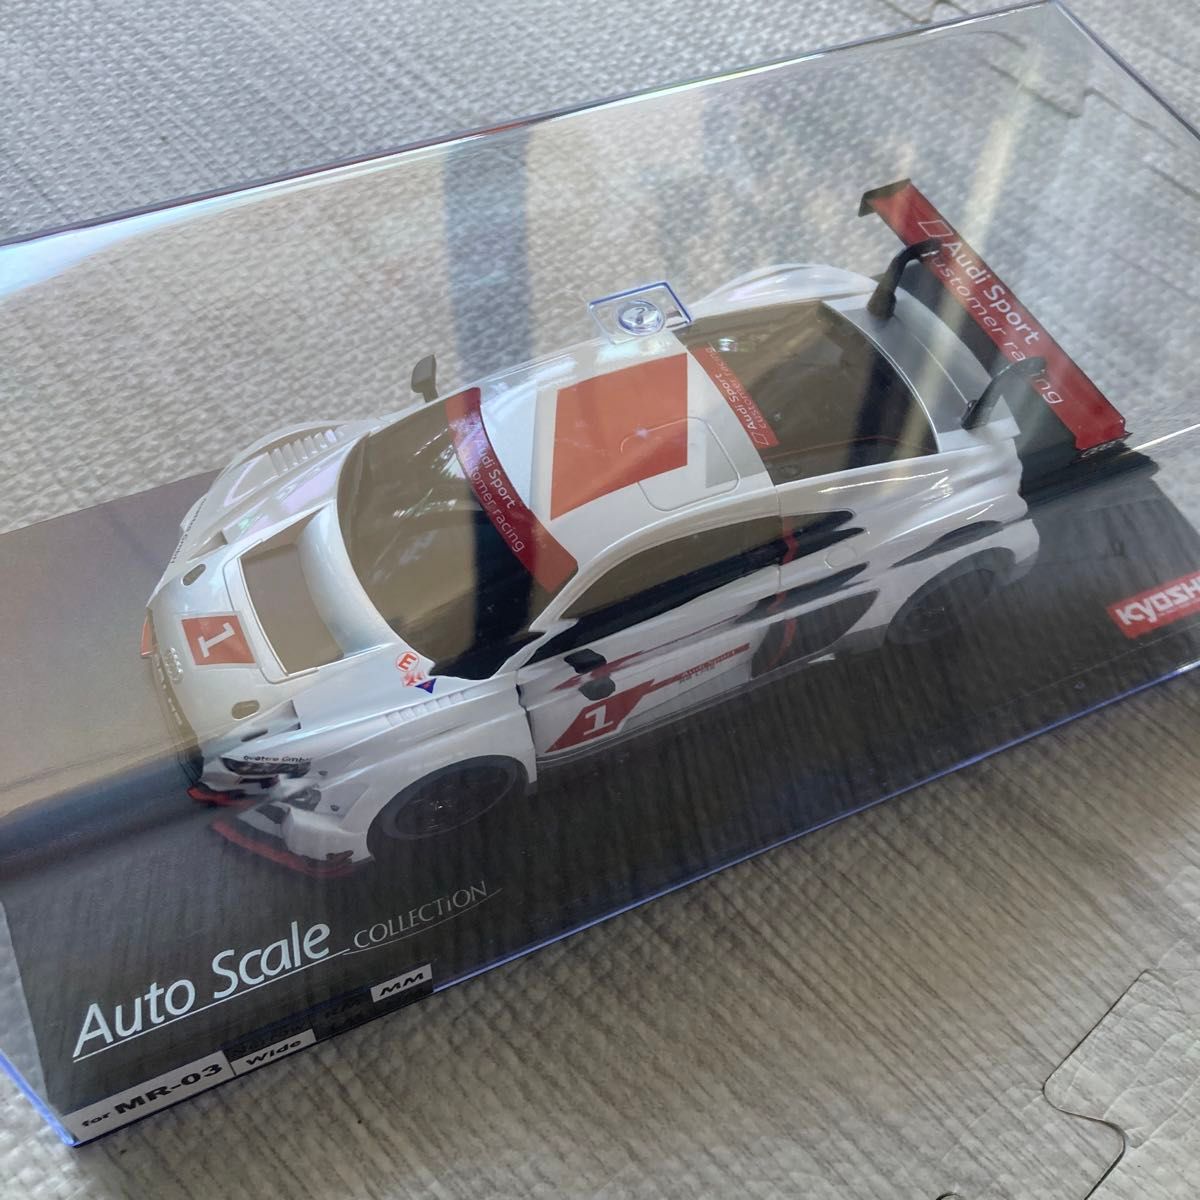 ASC MR03RWD Audi R8 LMS アウディスポーツ 2015 MZP234AS